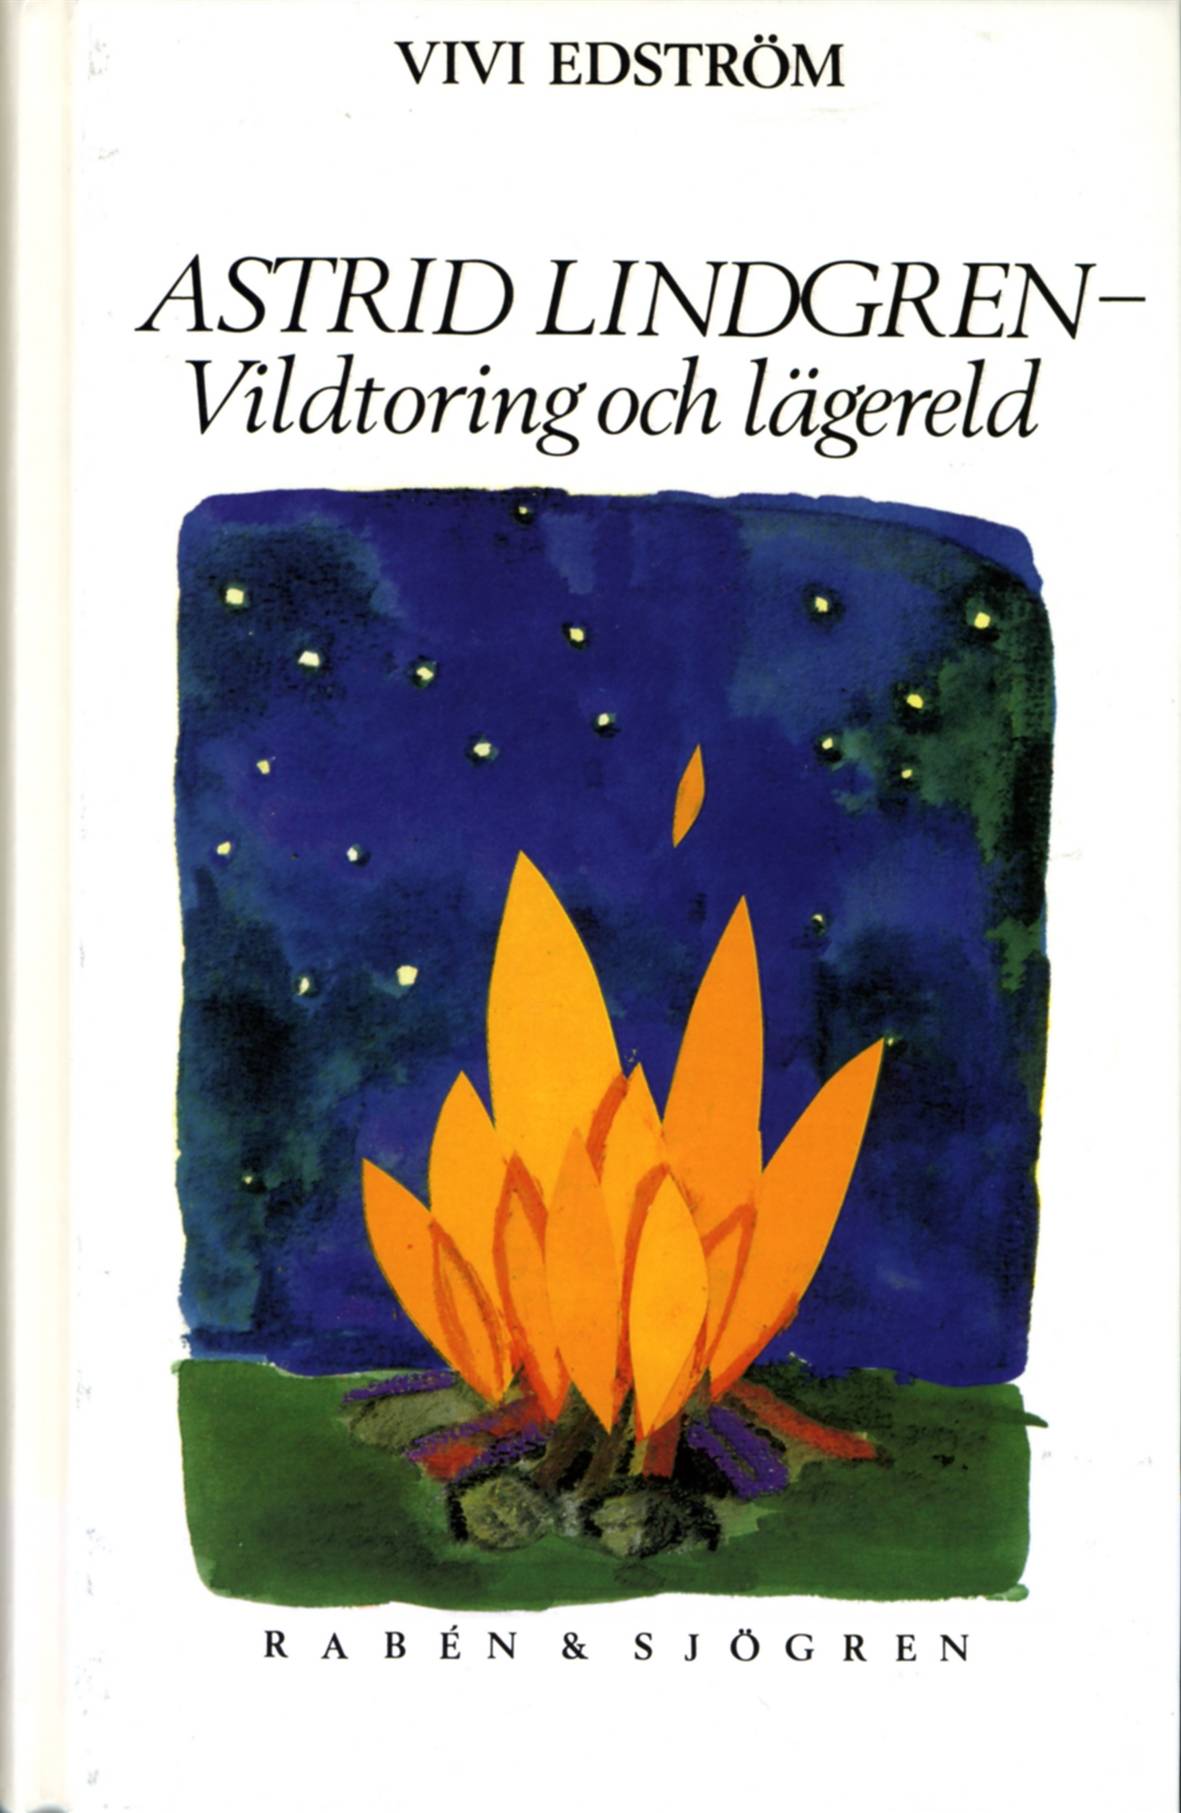 Astrid Lindgren : vildtoring och lägereld